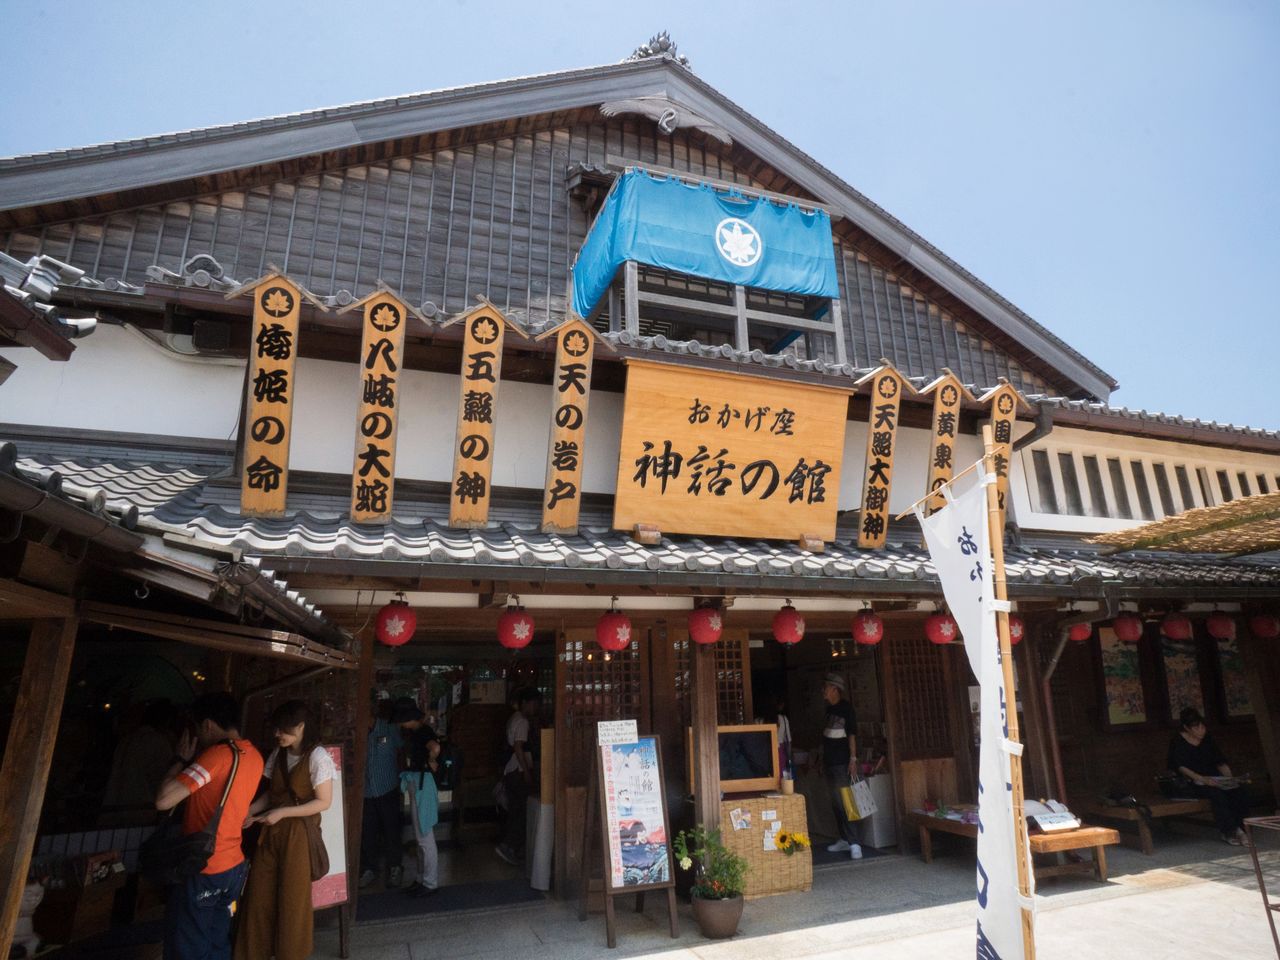 Okageza Shinwa no Yakata abre todos los días del año. La entrada cuesta 300 yenes para los adultos y cien para los niños de primaria. 